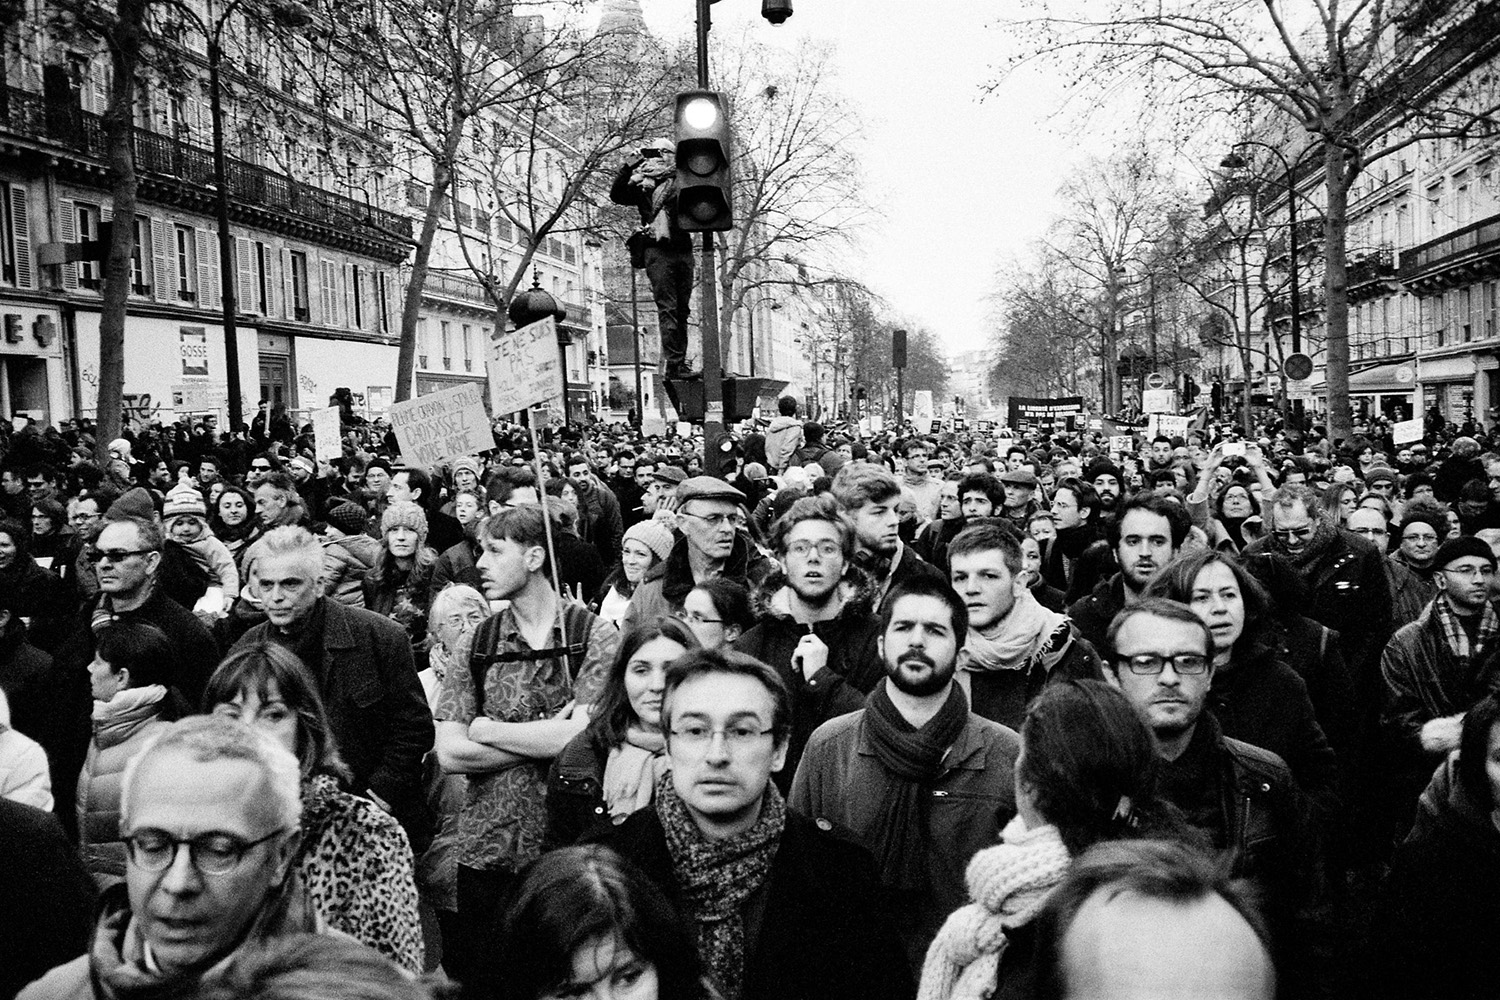  Marche Républicaine 11 janvier 2015, Paris 